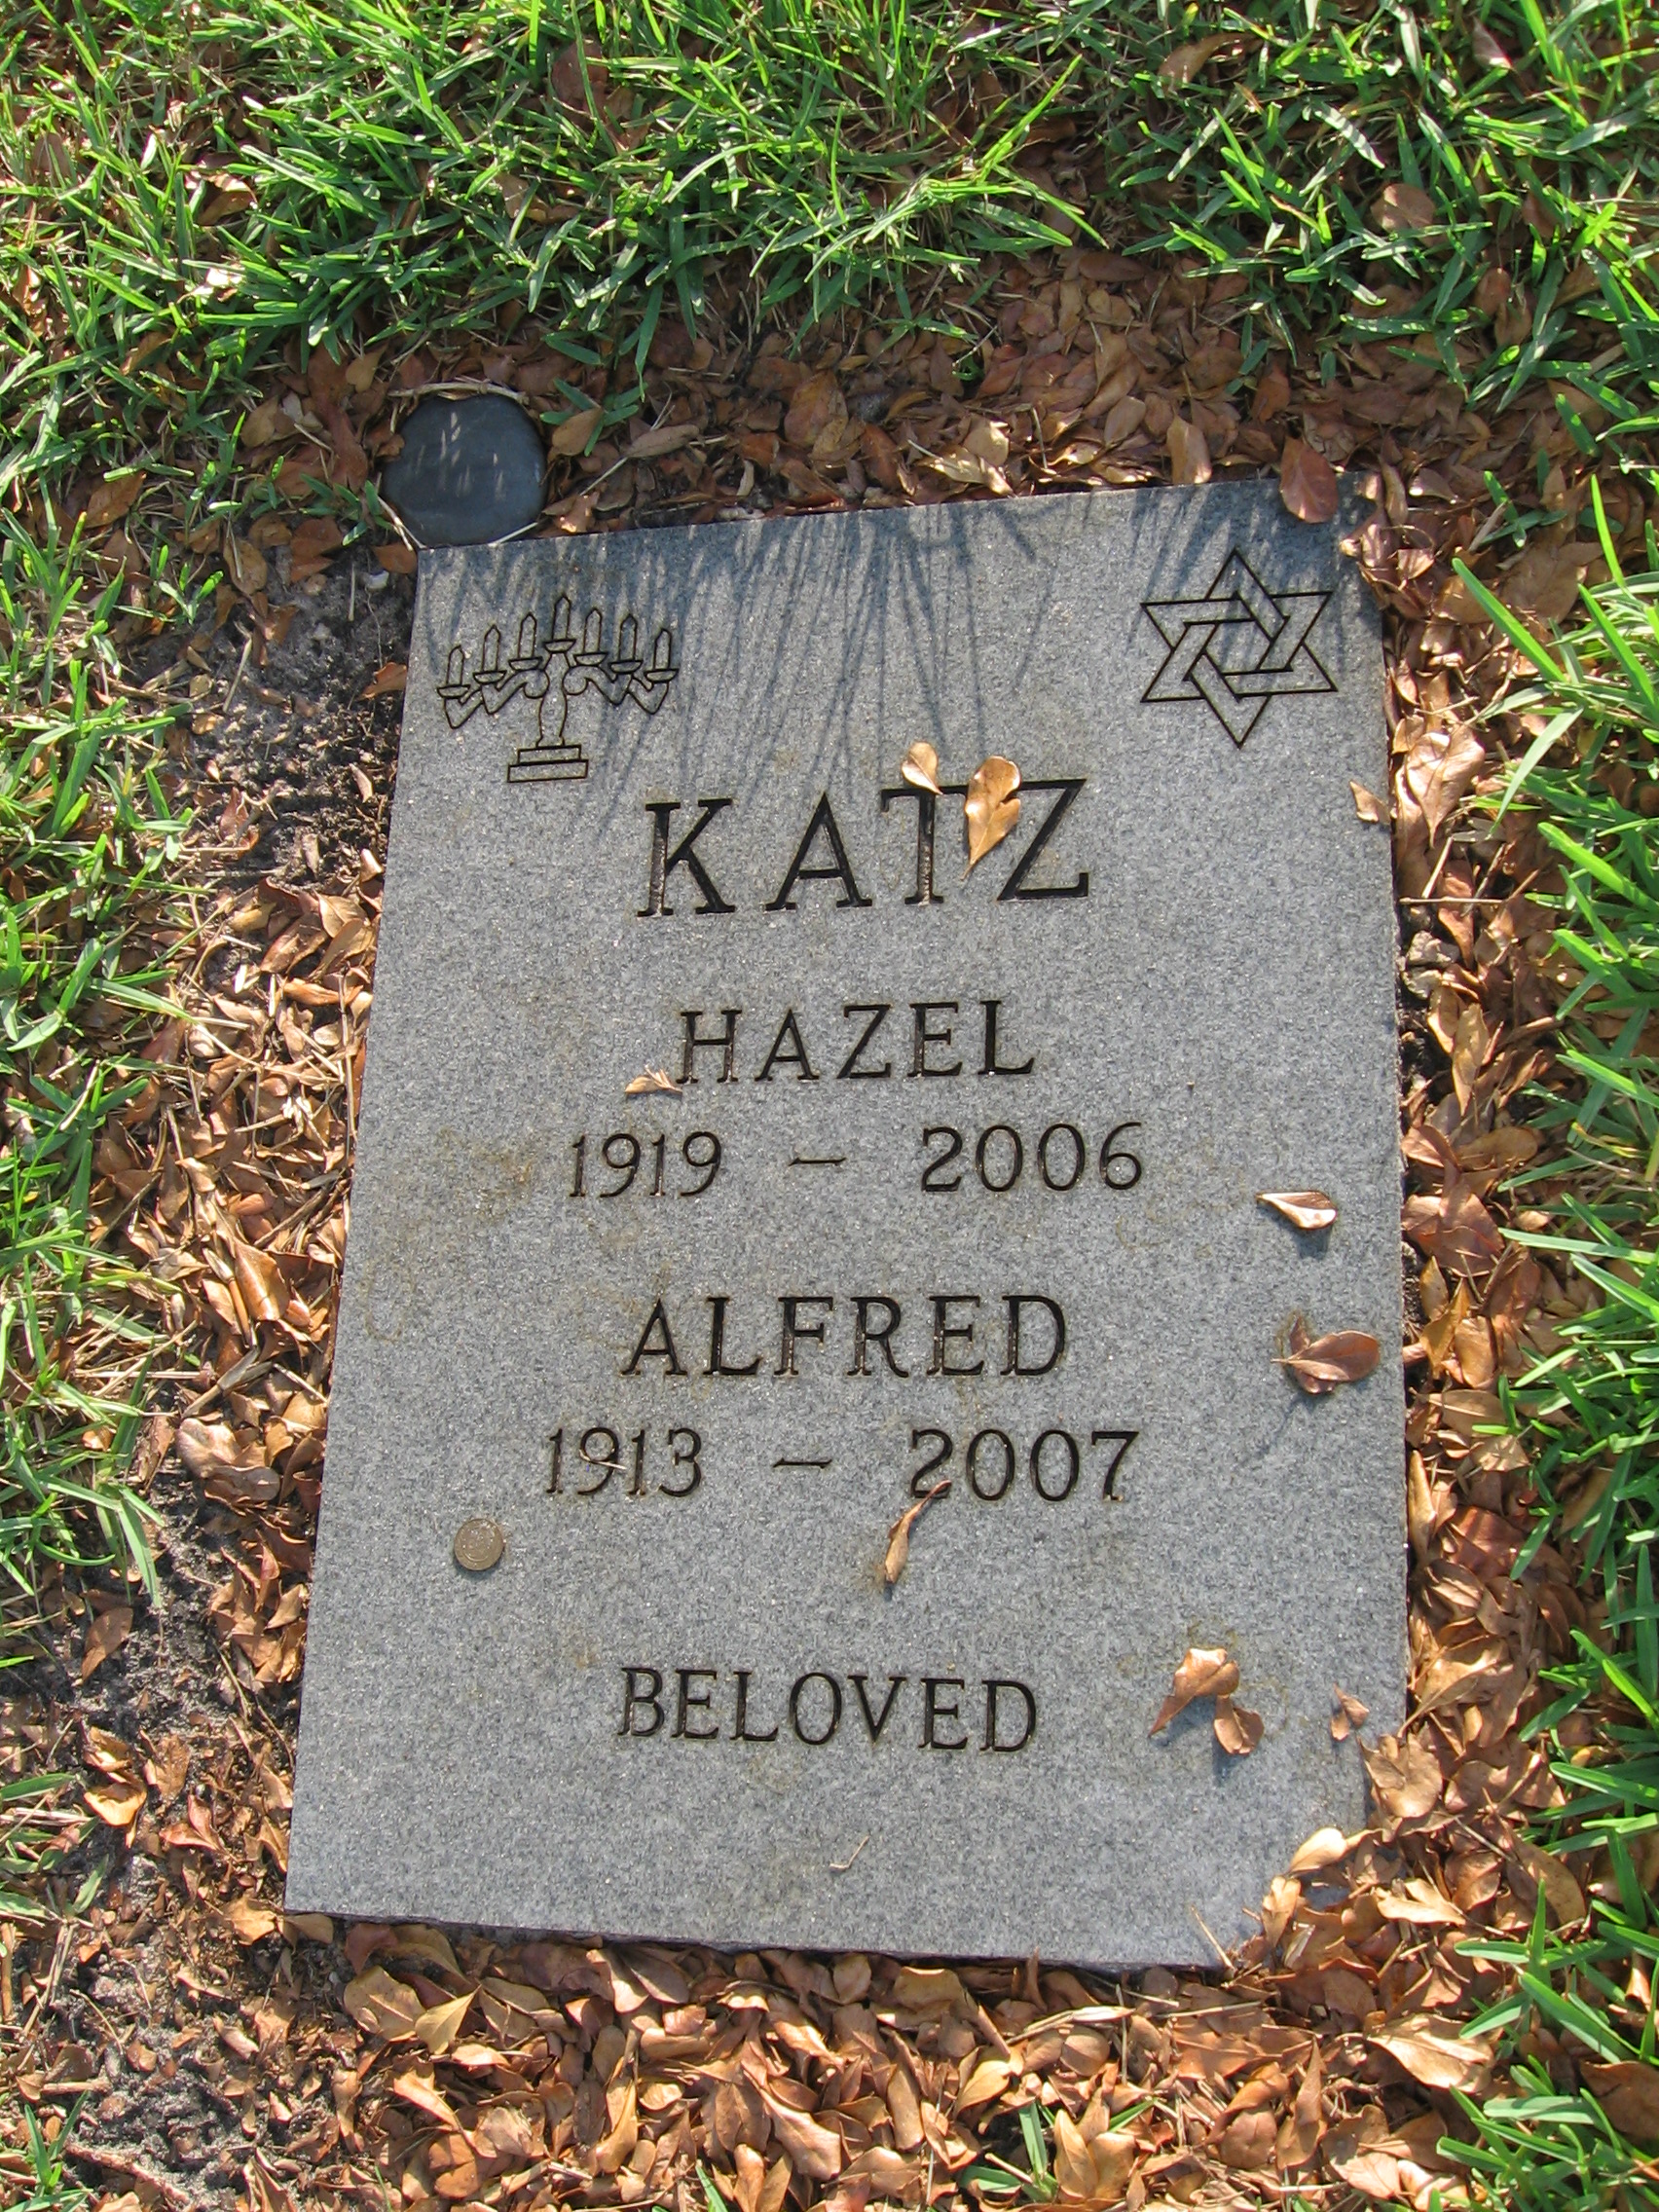 Hazel Katz